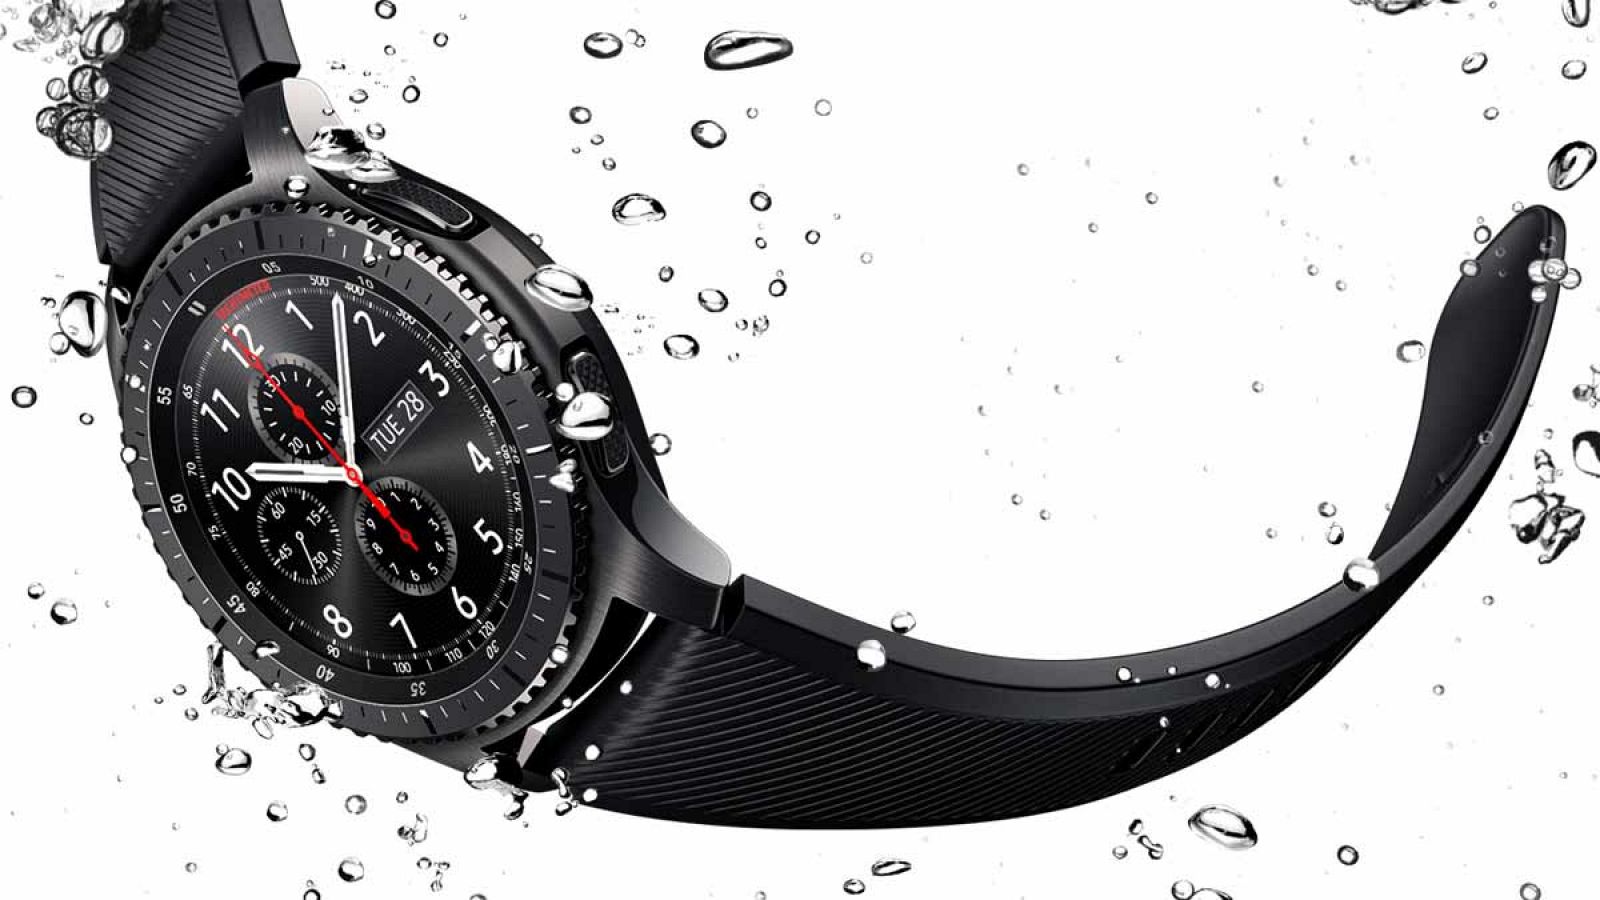 El nuevo 'smartwatch' de la marca surcoreana es resistente al agua y al polvo con certificación IP68.